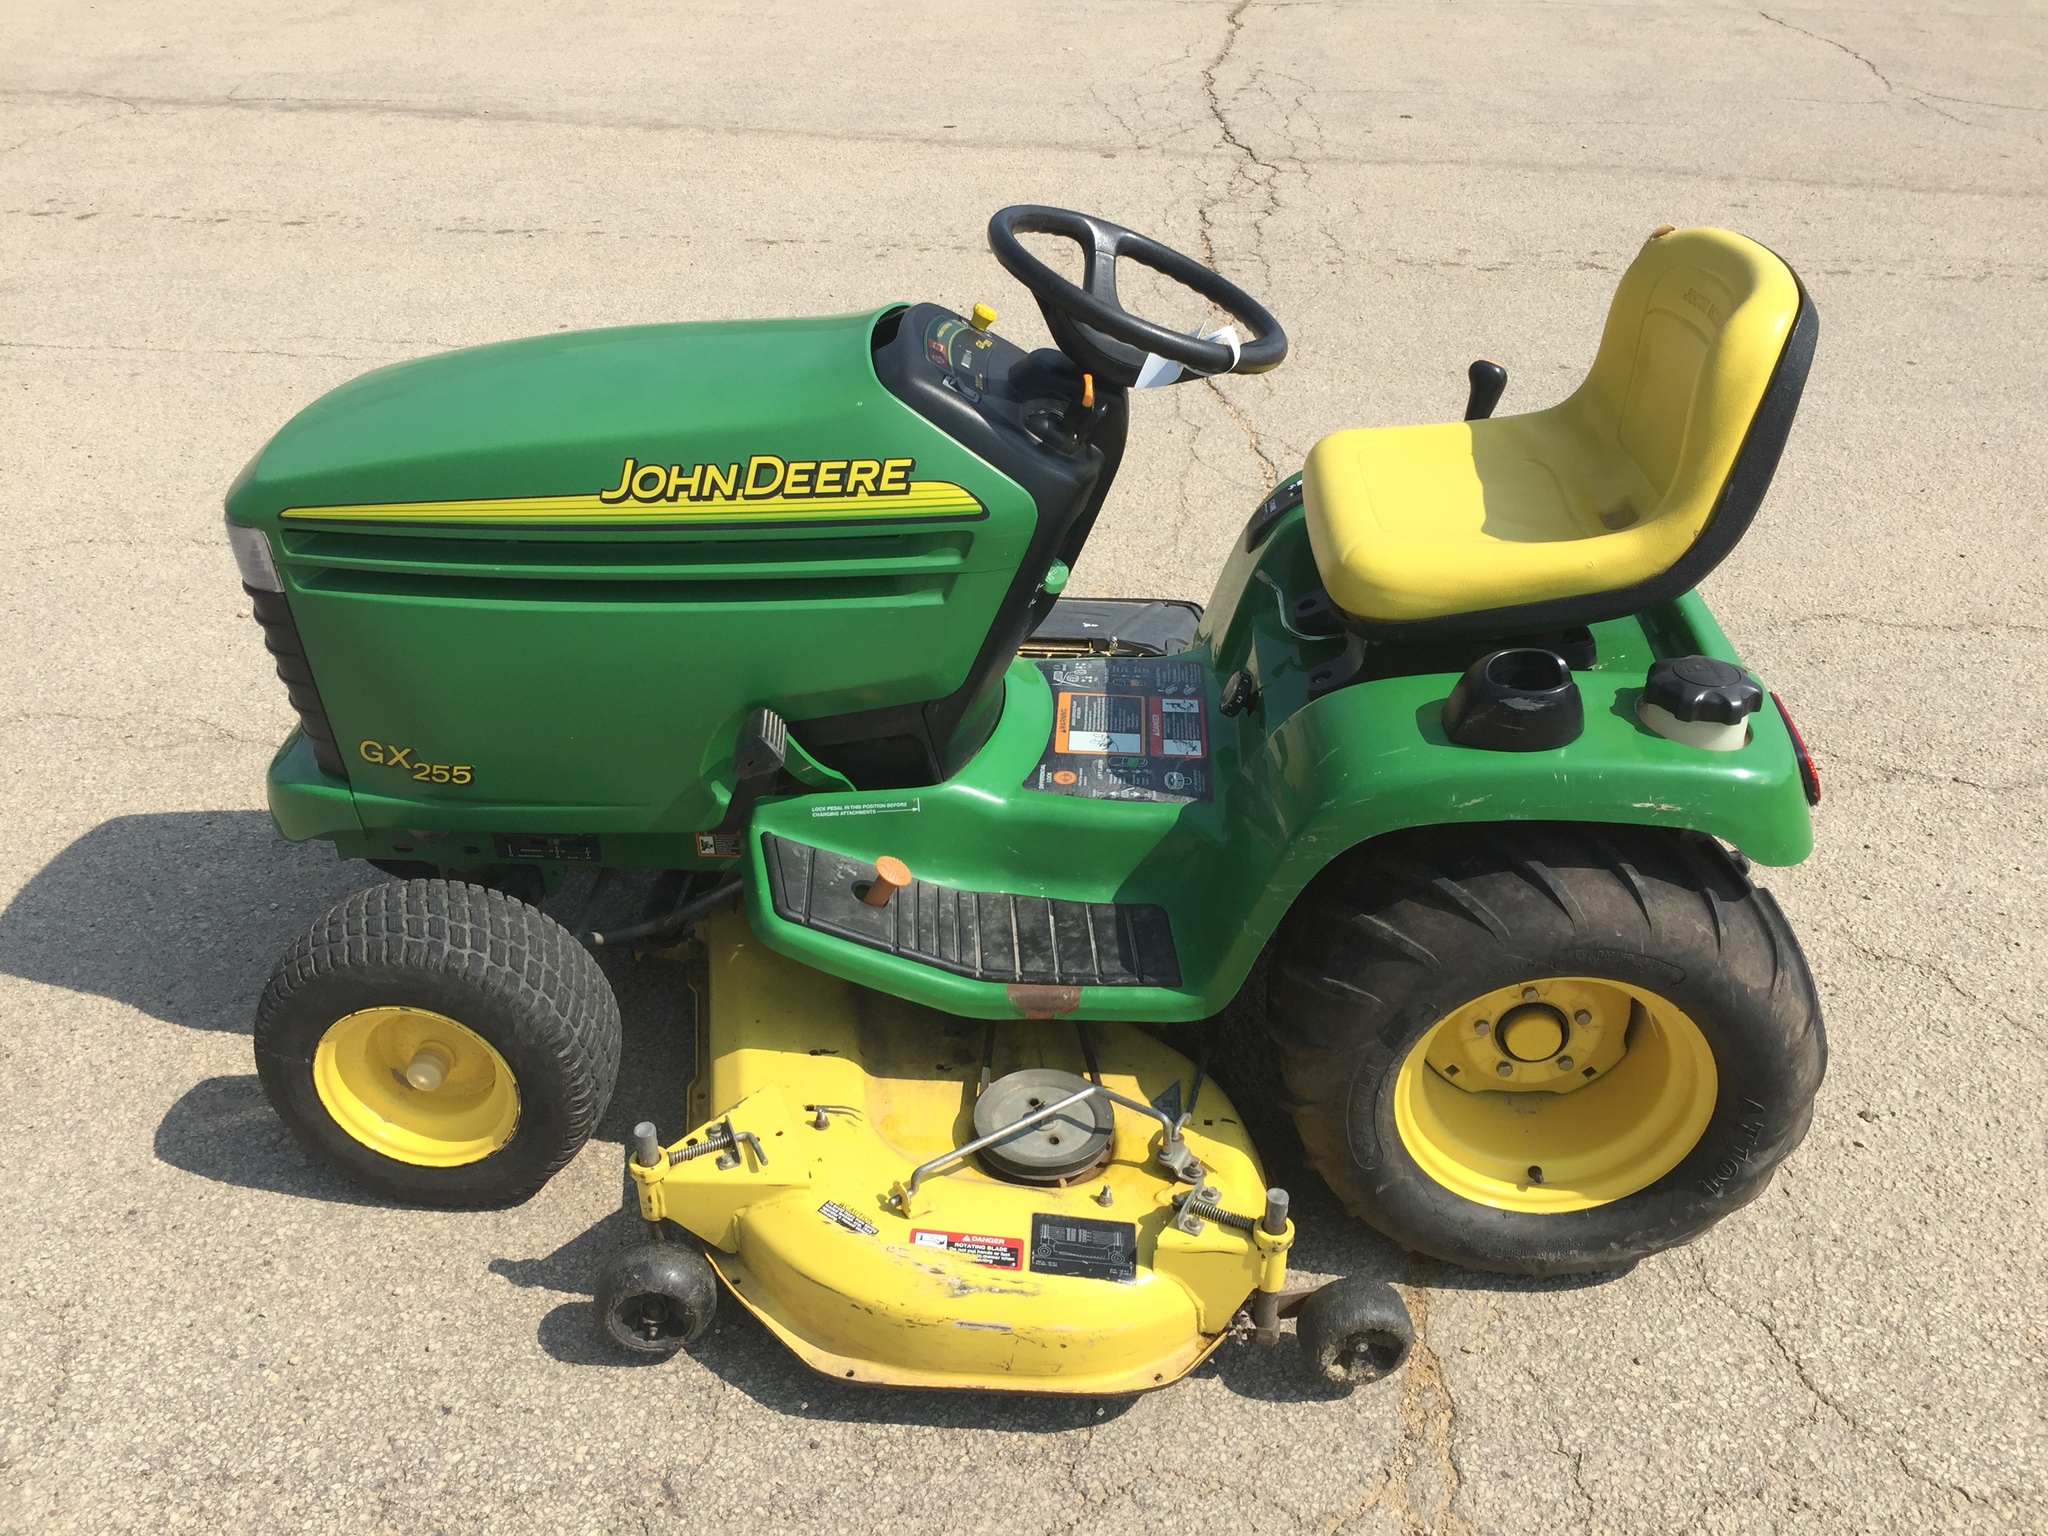 John Deere GX255 Lawn & Garden Tractors for Sale | [58623]